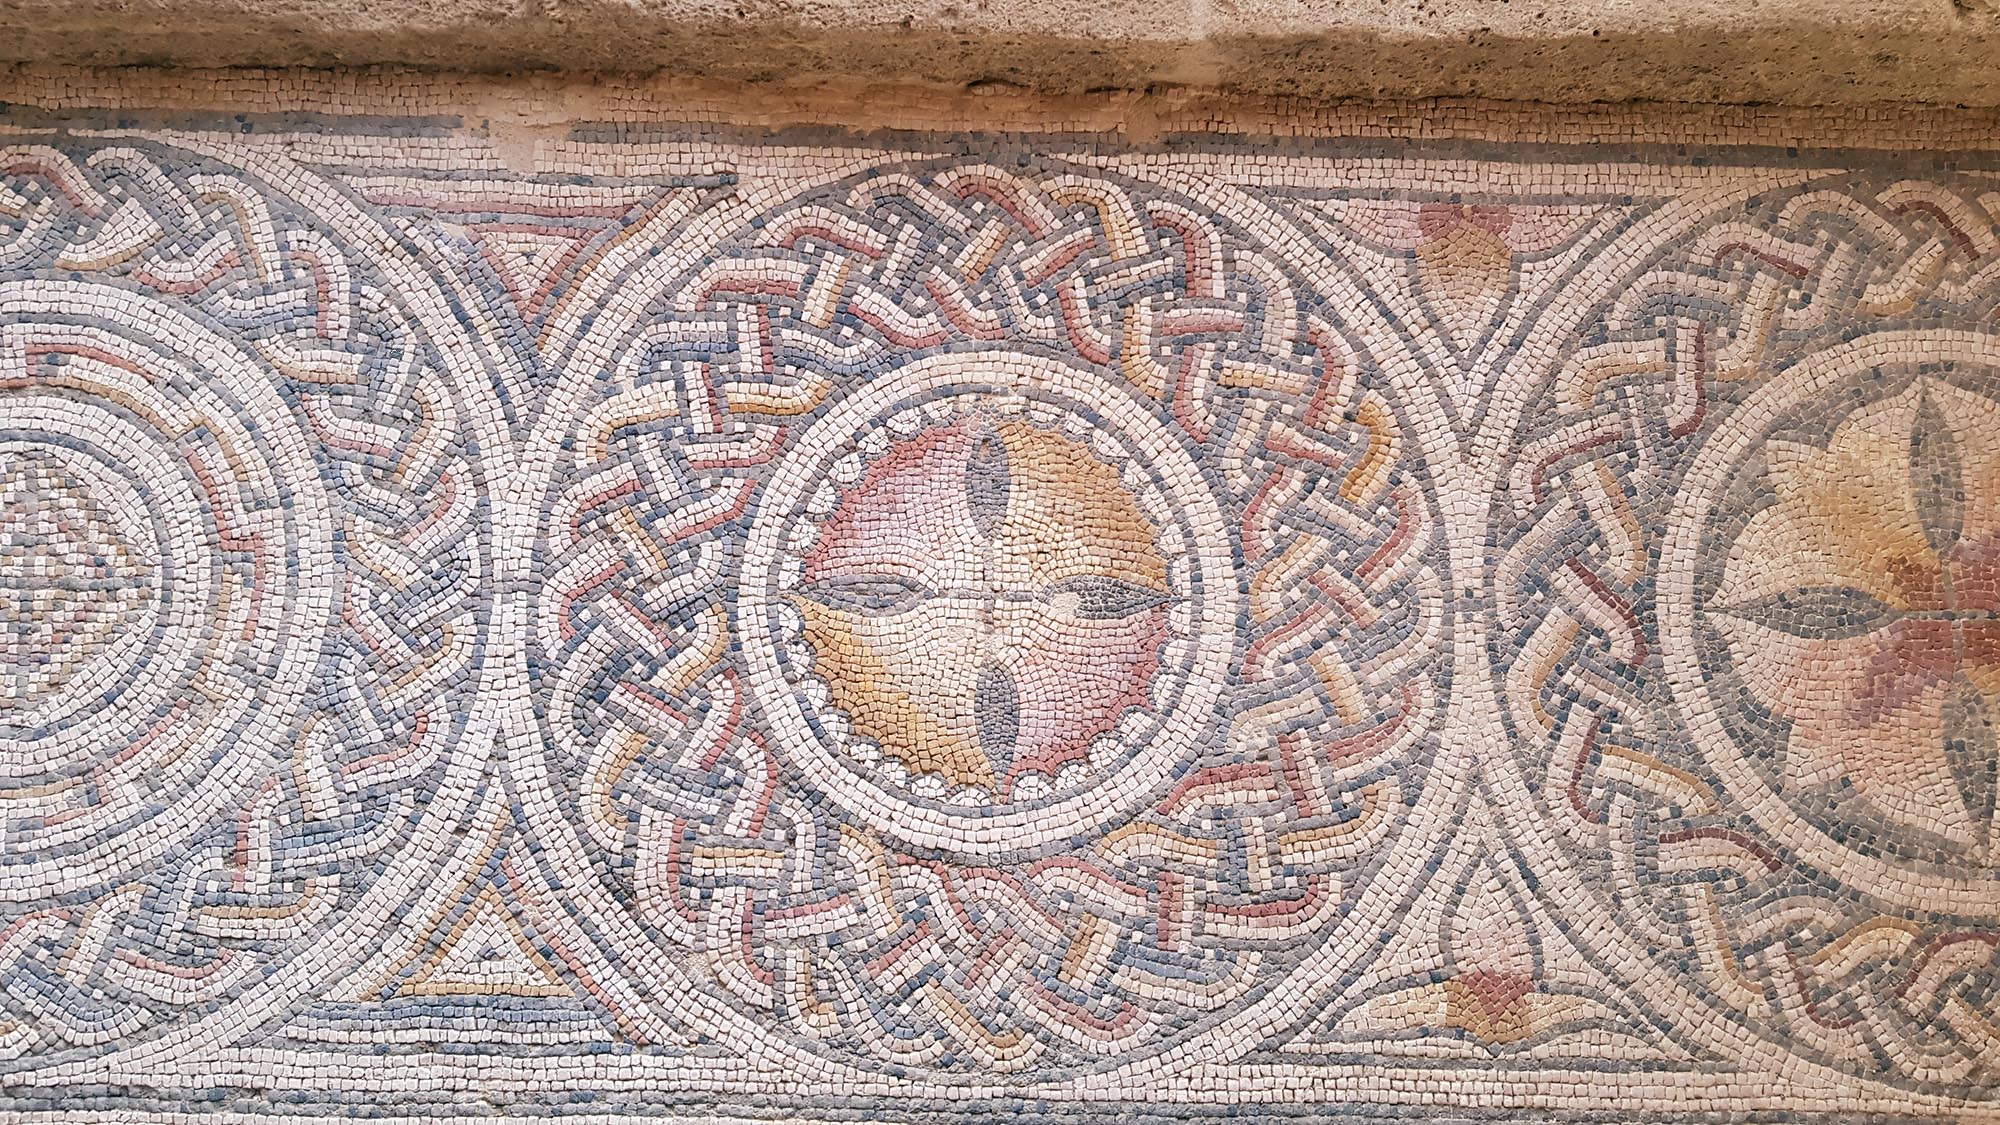 Detalle de uno de los mosaicos restaurados en el yacimiento de La Malena, en Azuara. Detalle de un mosaico restaurado en el yacimiento de La Malena, en Azuara